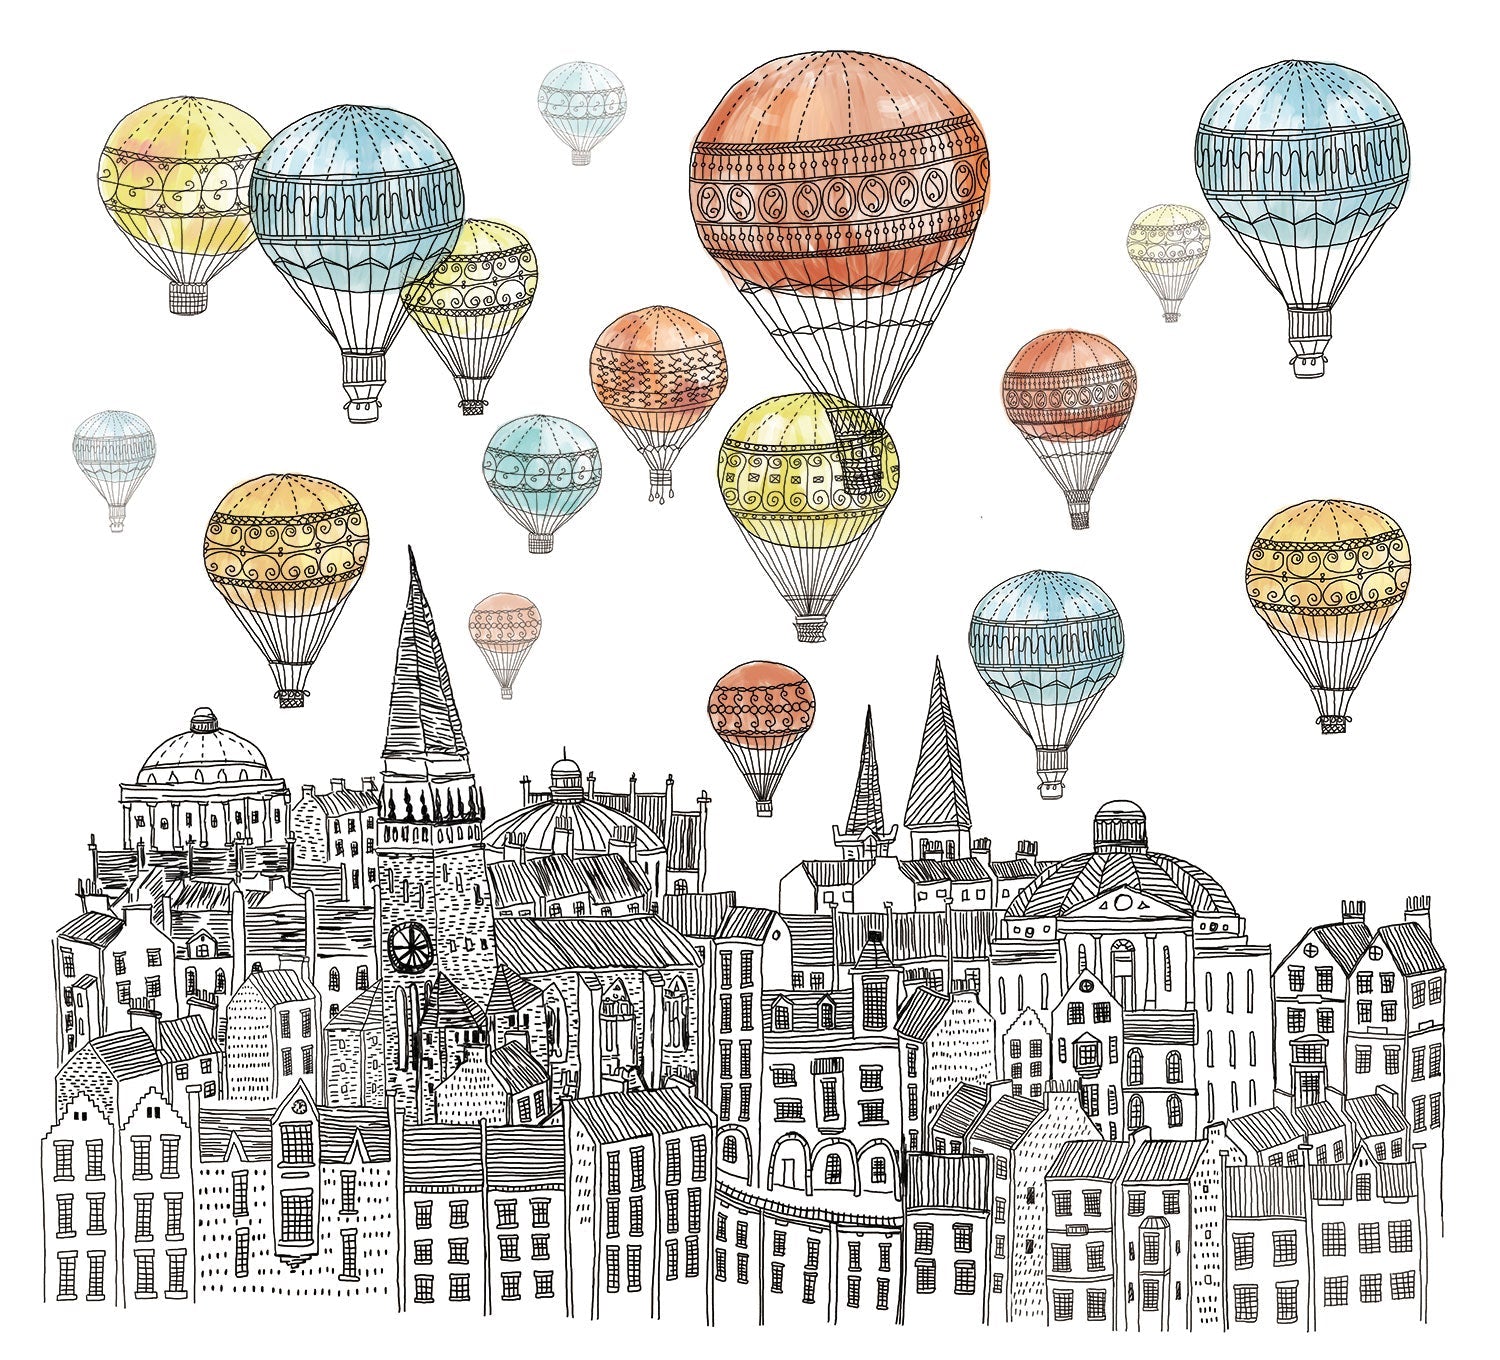 Papier peint panoramique montgolfières colorées - Kam & Leon